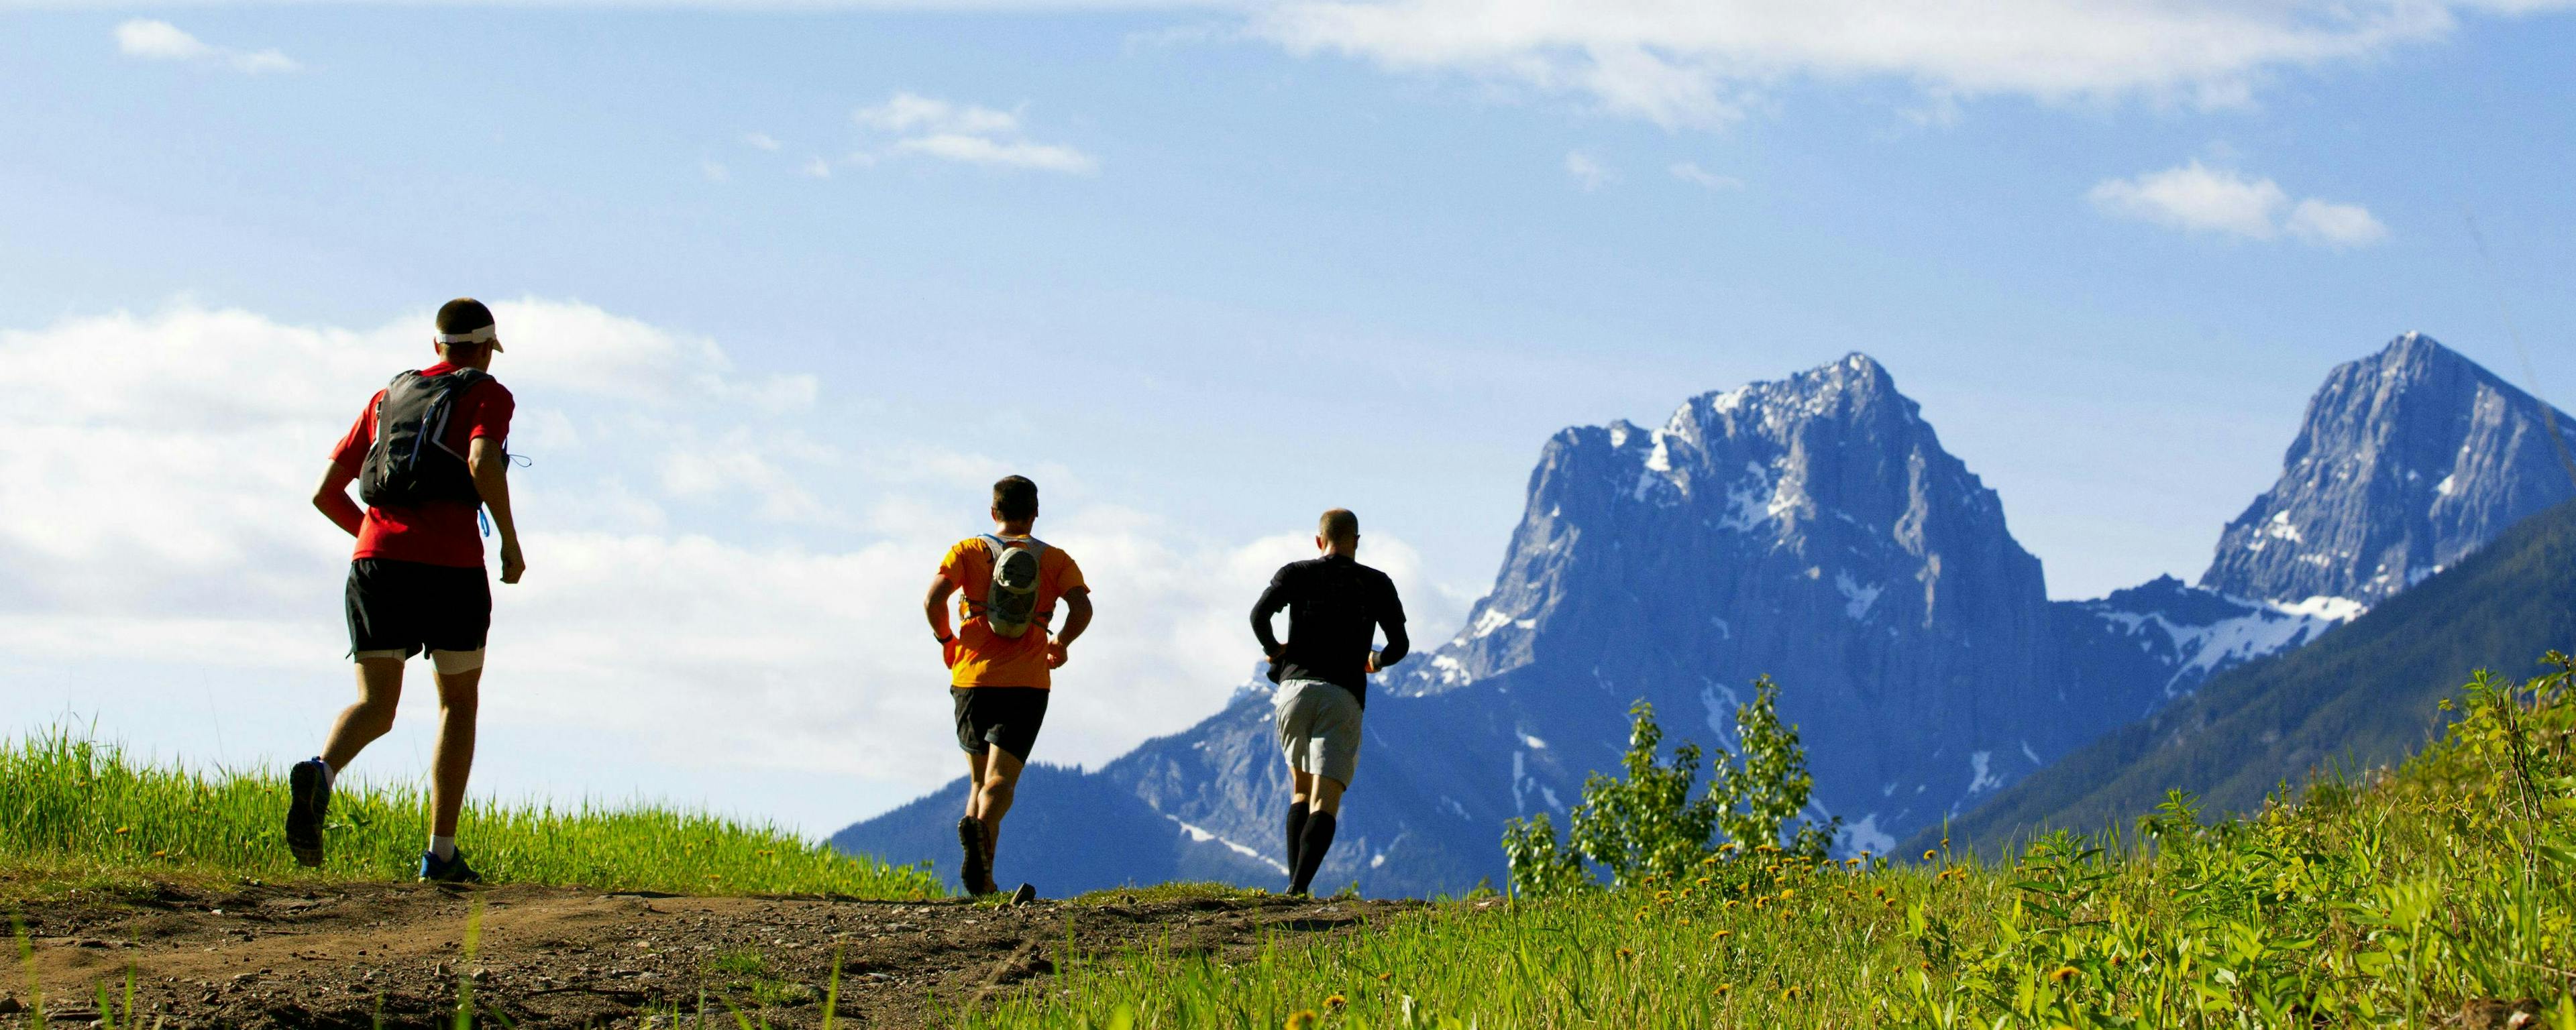 Trois coureurs de trail courant sur un sentier herbeux en direction de pics montagneux